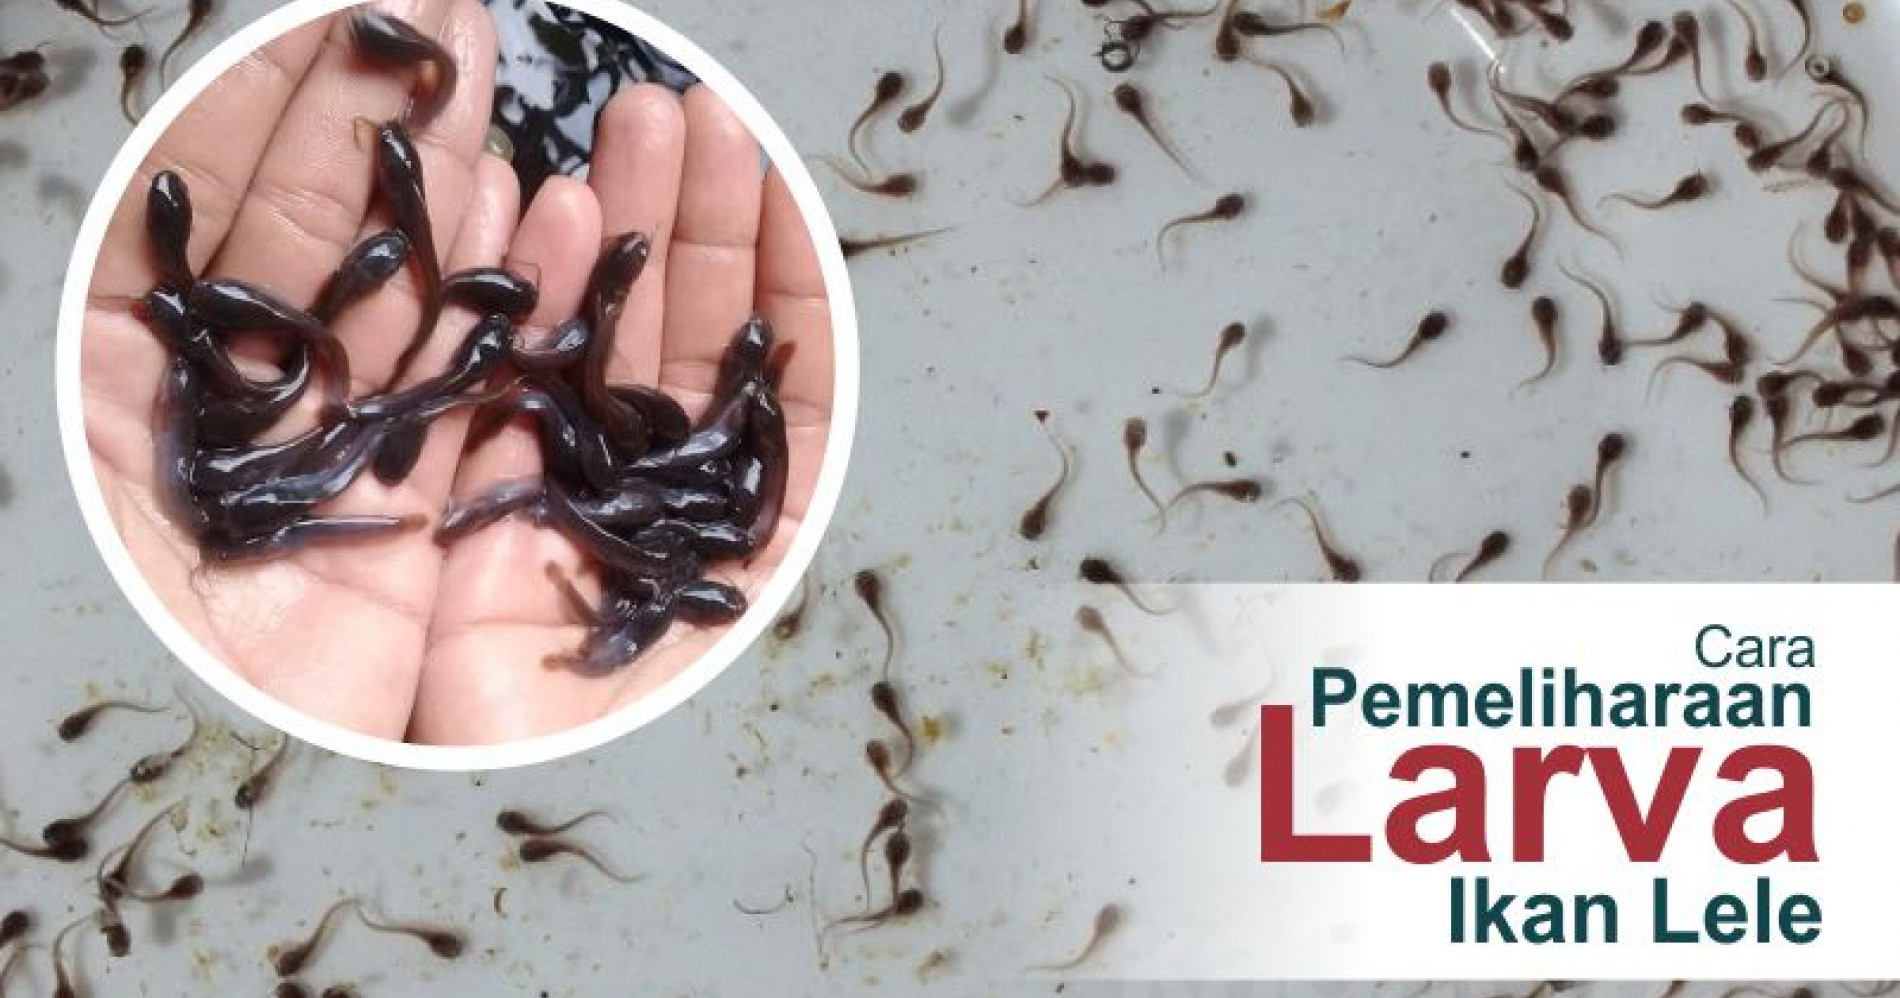 Cara pemeliharaan larva ikan lele (Sumber gambar: kabartani.com)